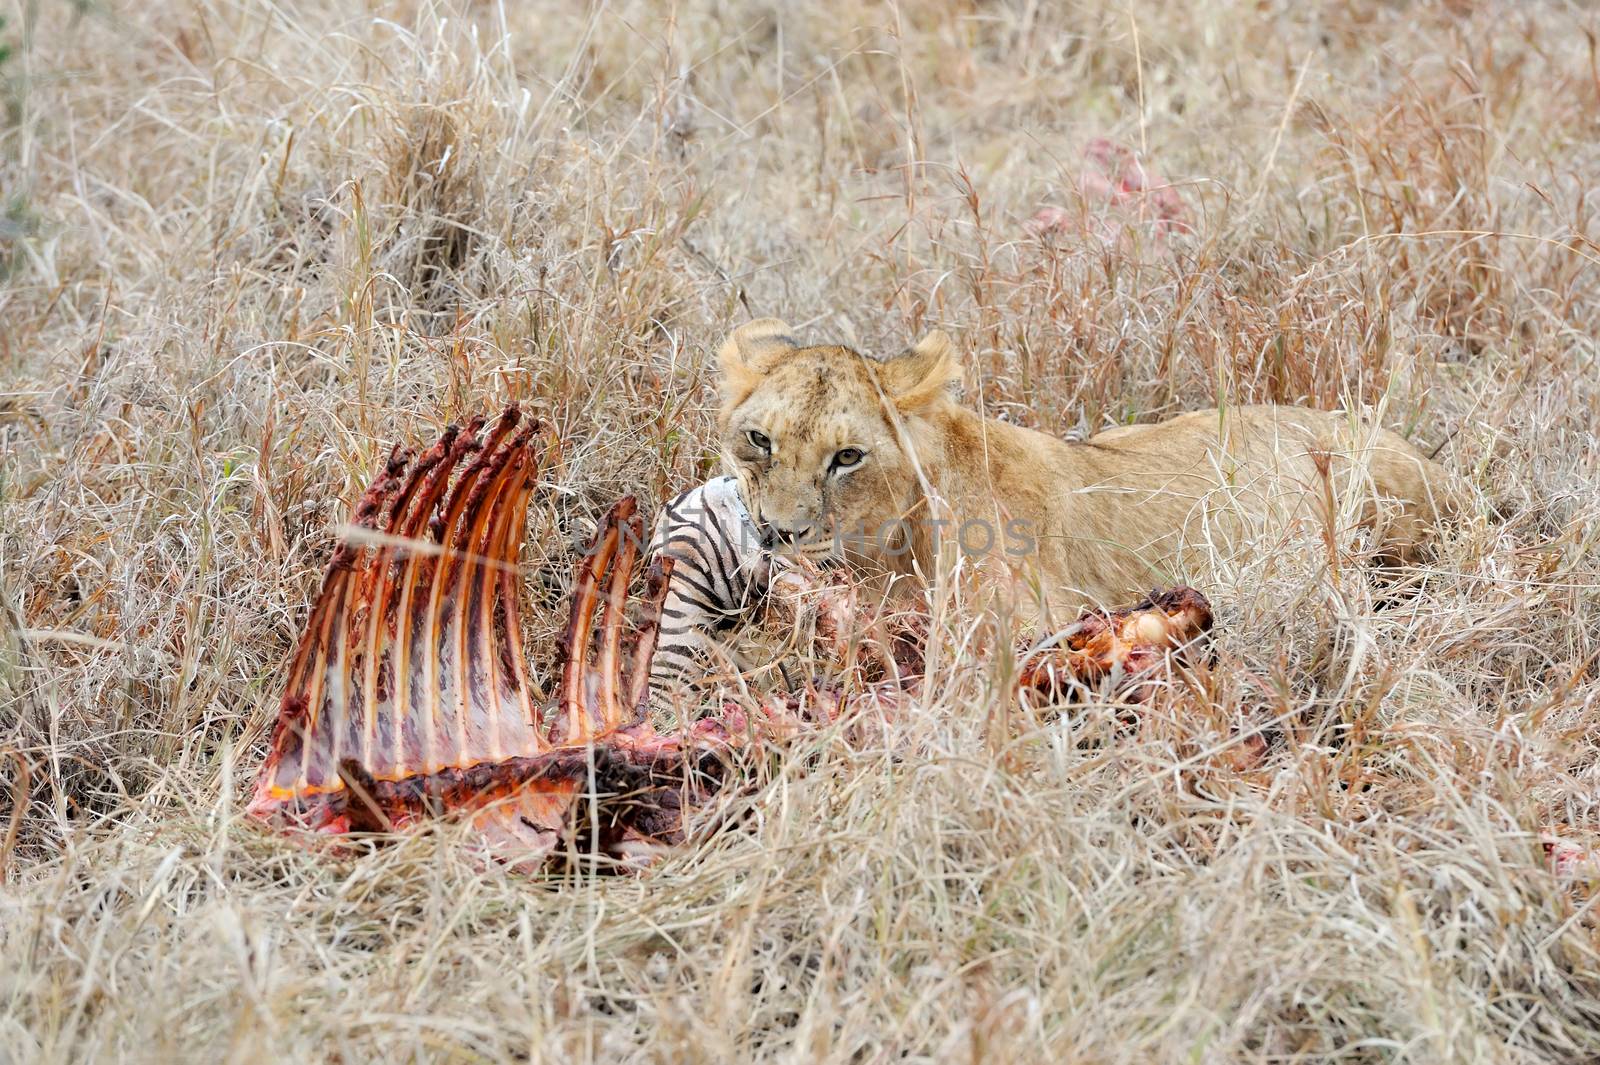 Lion eating a zebra, National park of Kenya, Africa